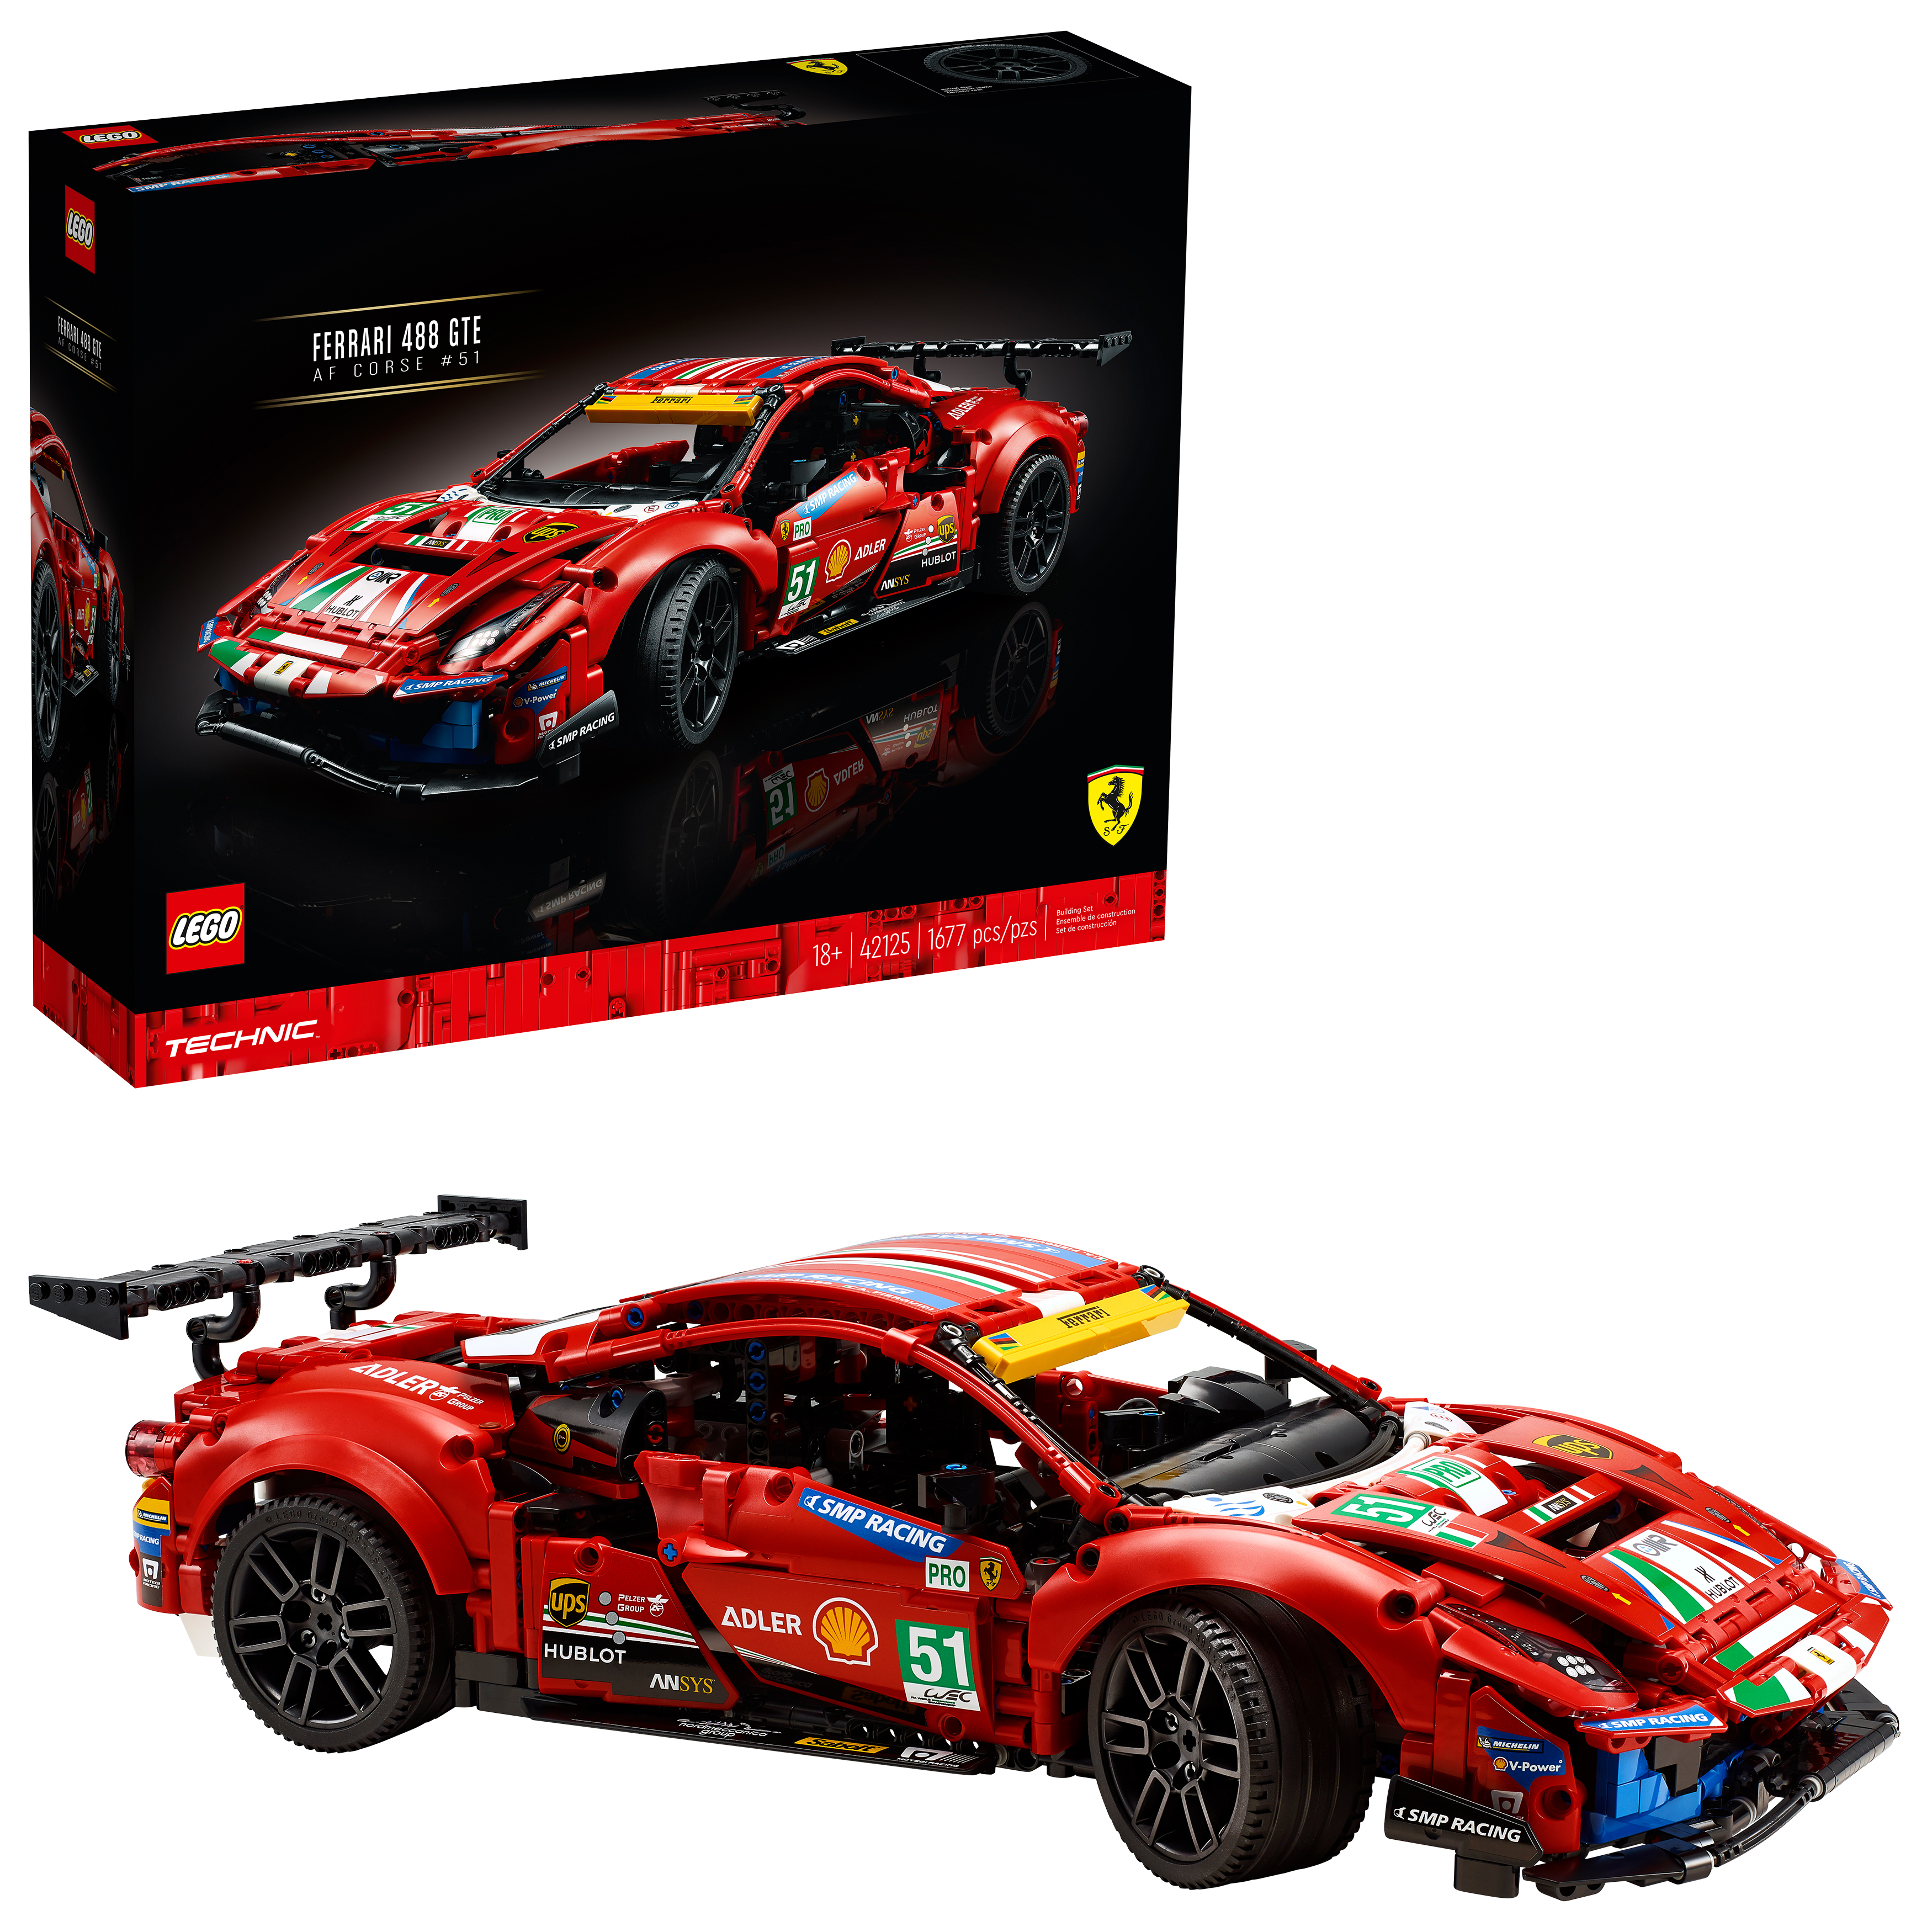 LEGO® Technic® Ferrari 488 GTE AF Corse #51 42125 Building Kit (1,677 Pieces)